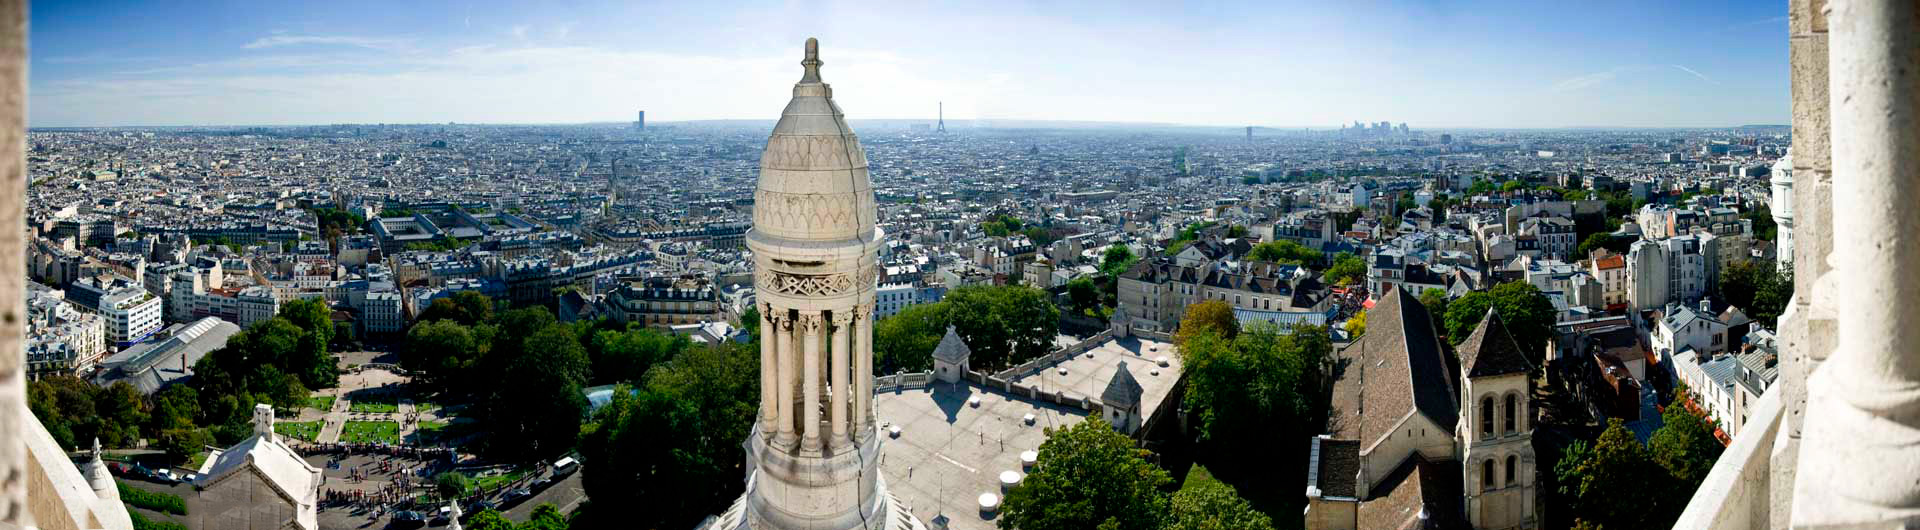 Paris vu de la Basilique du Sacré Coeur